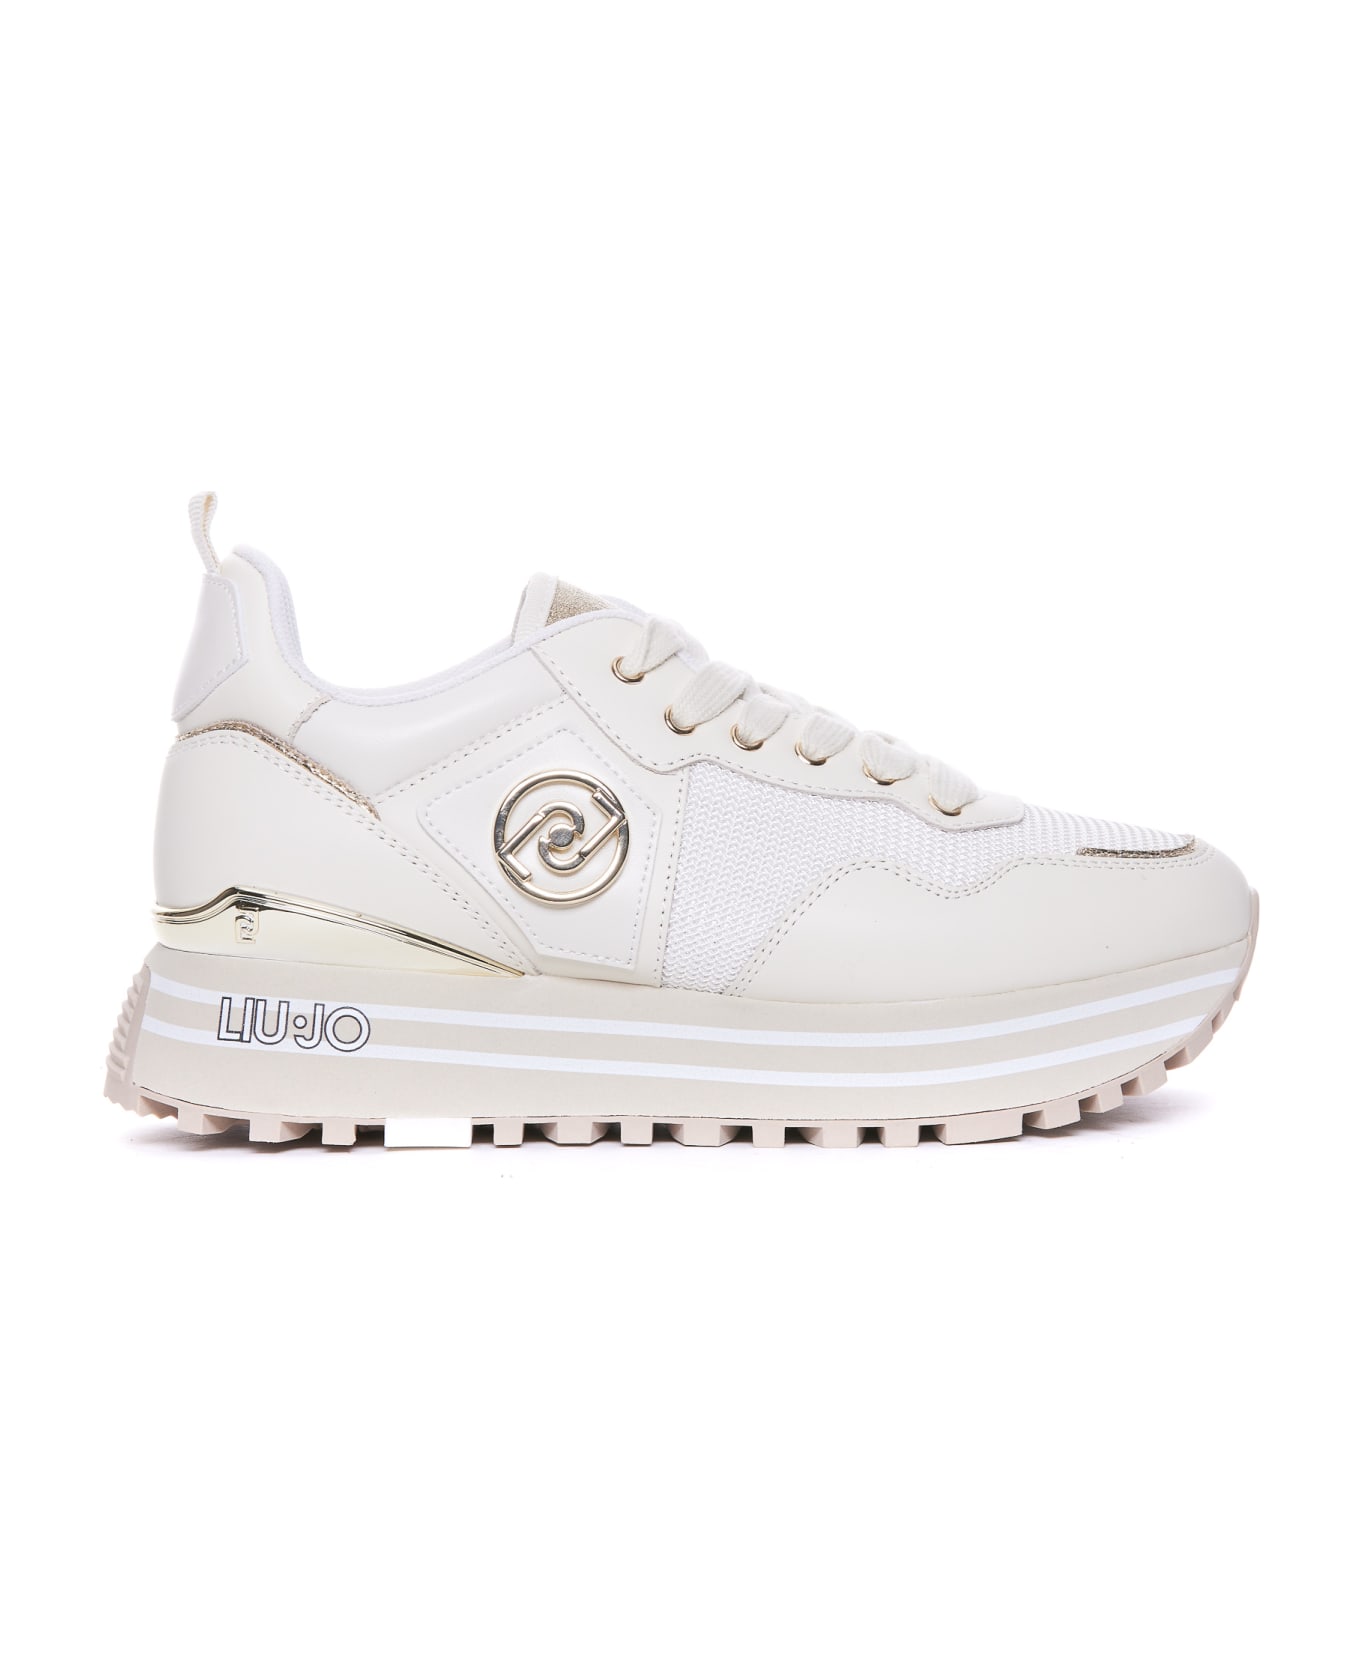 Liu-Jo Maxi Wander Sneakers - White